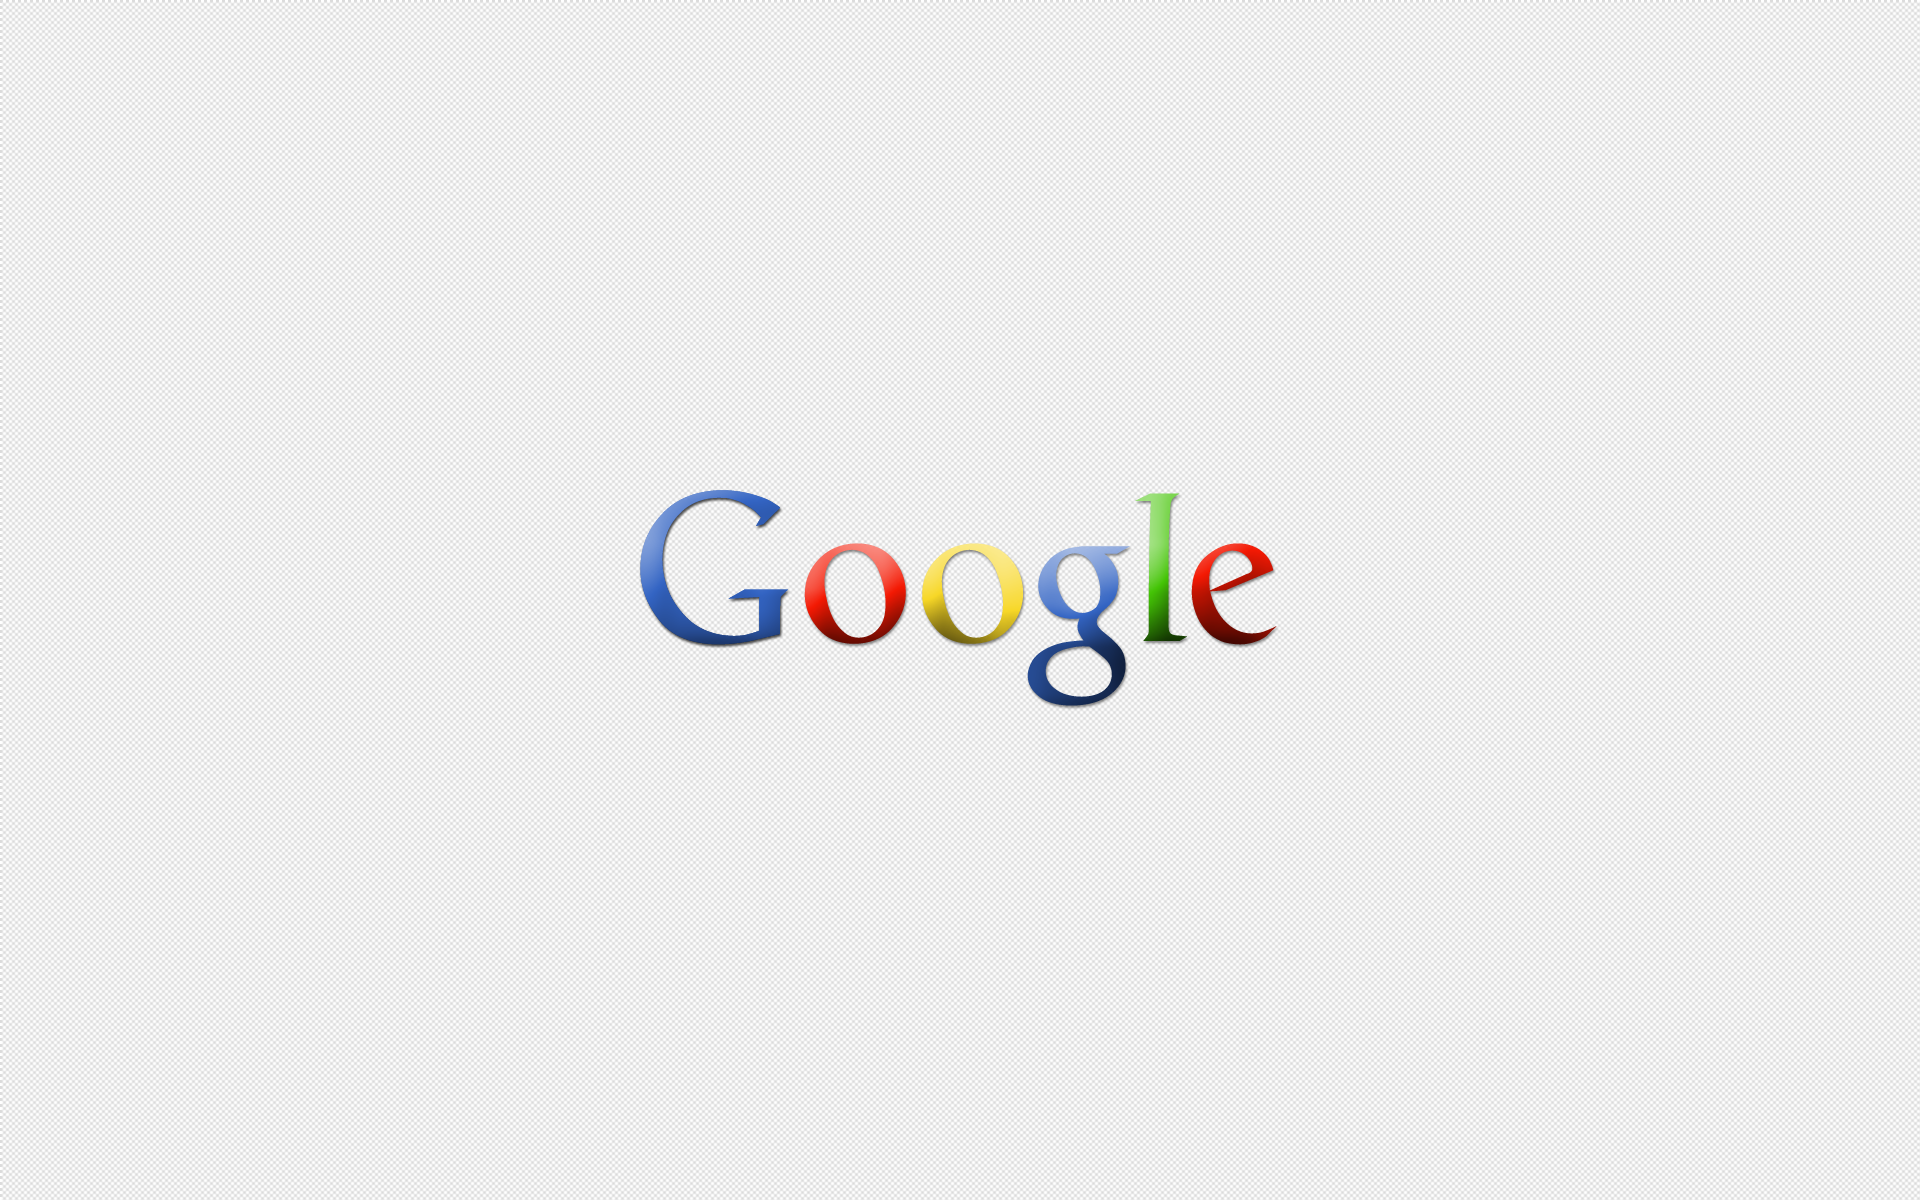 Description Google Wallpaper is a hi res Wallpaper for pc desktops